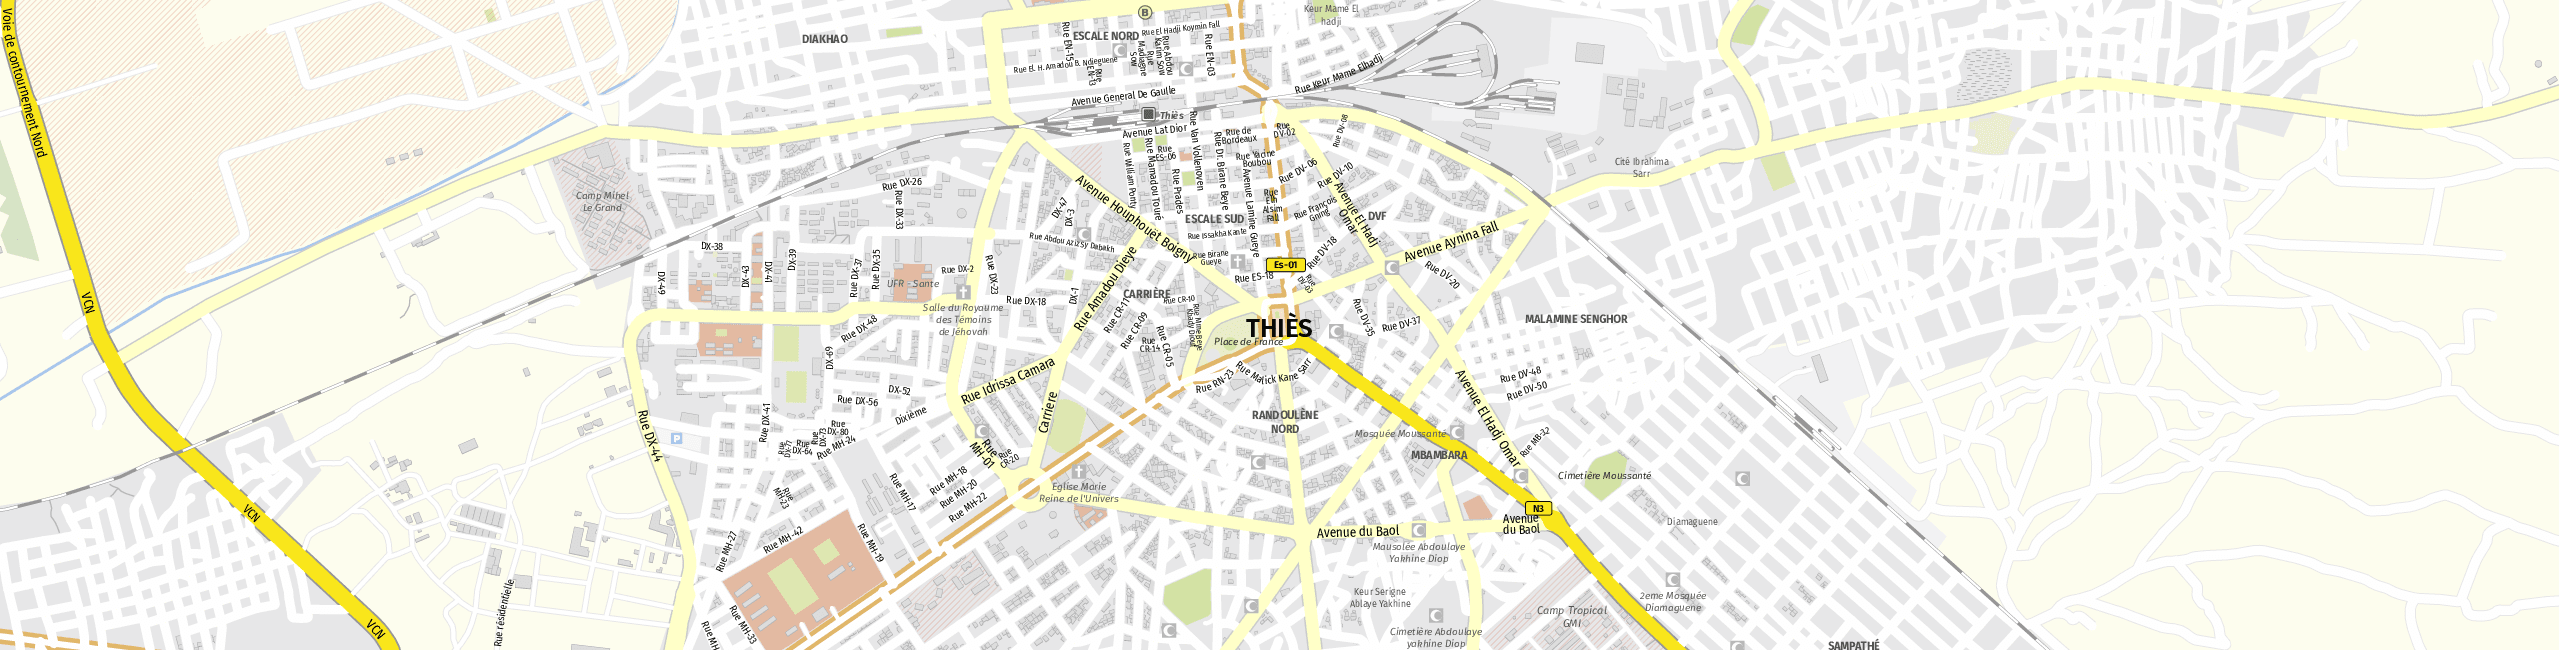 Stadtplan Thiès zum Downloaden.